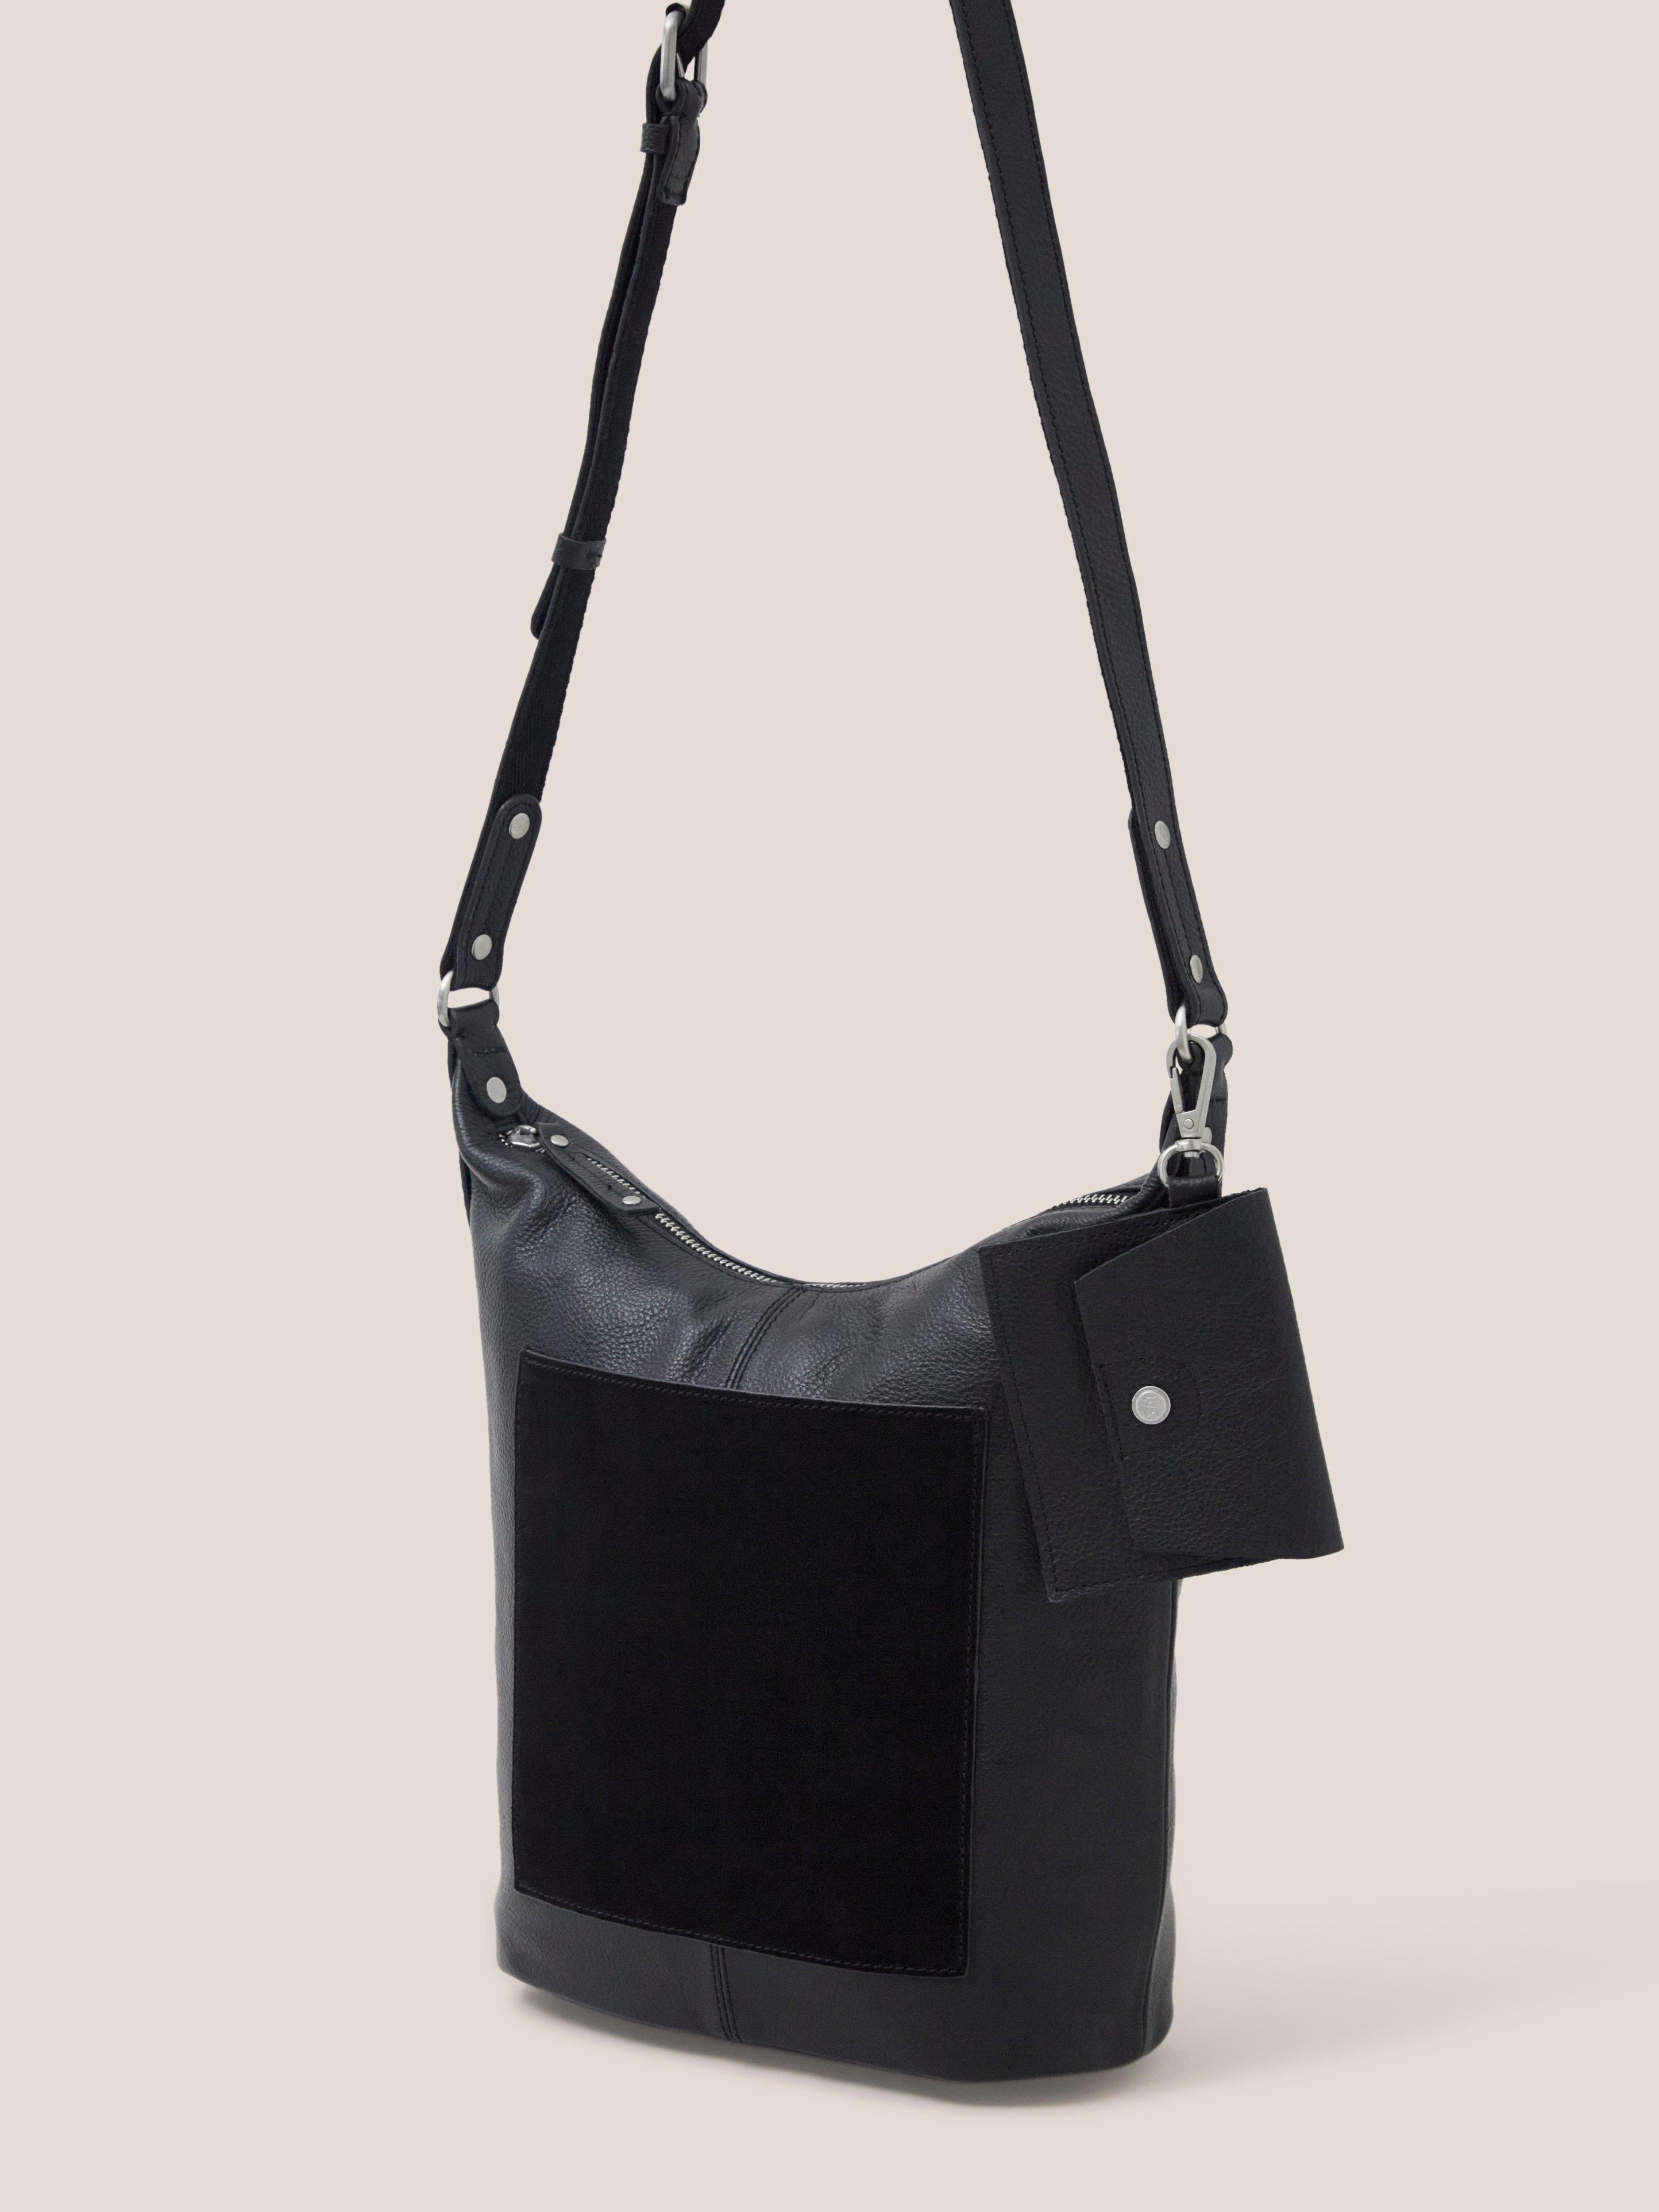 Fern Leather Casual Crossbody Bag